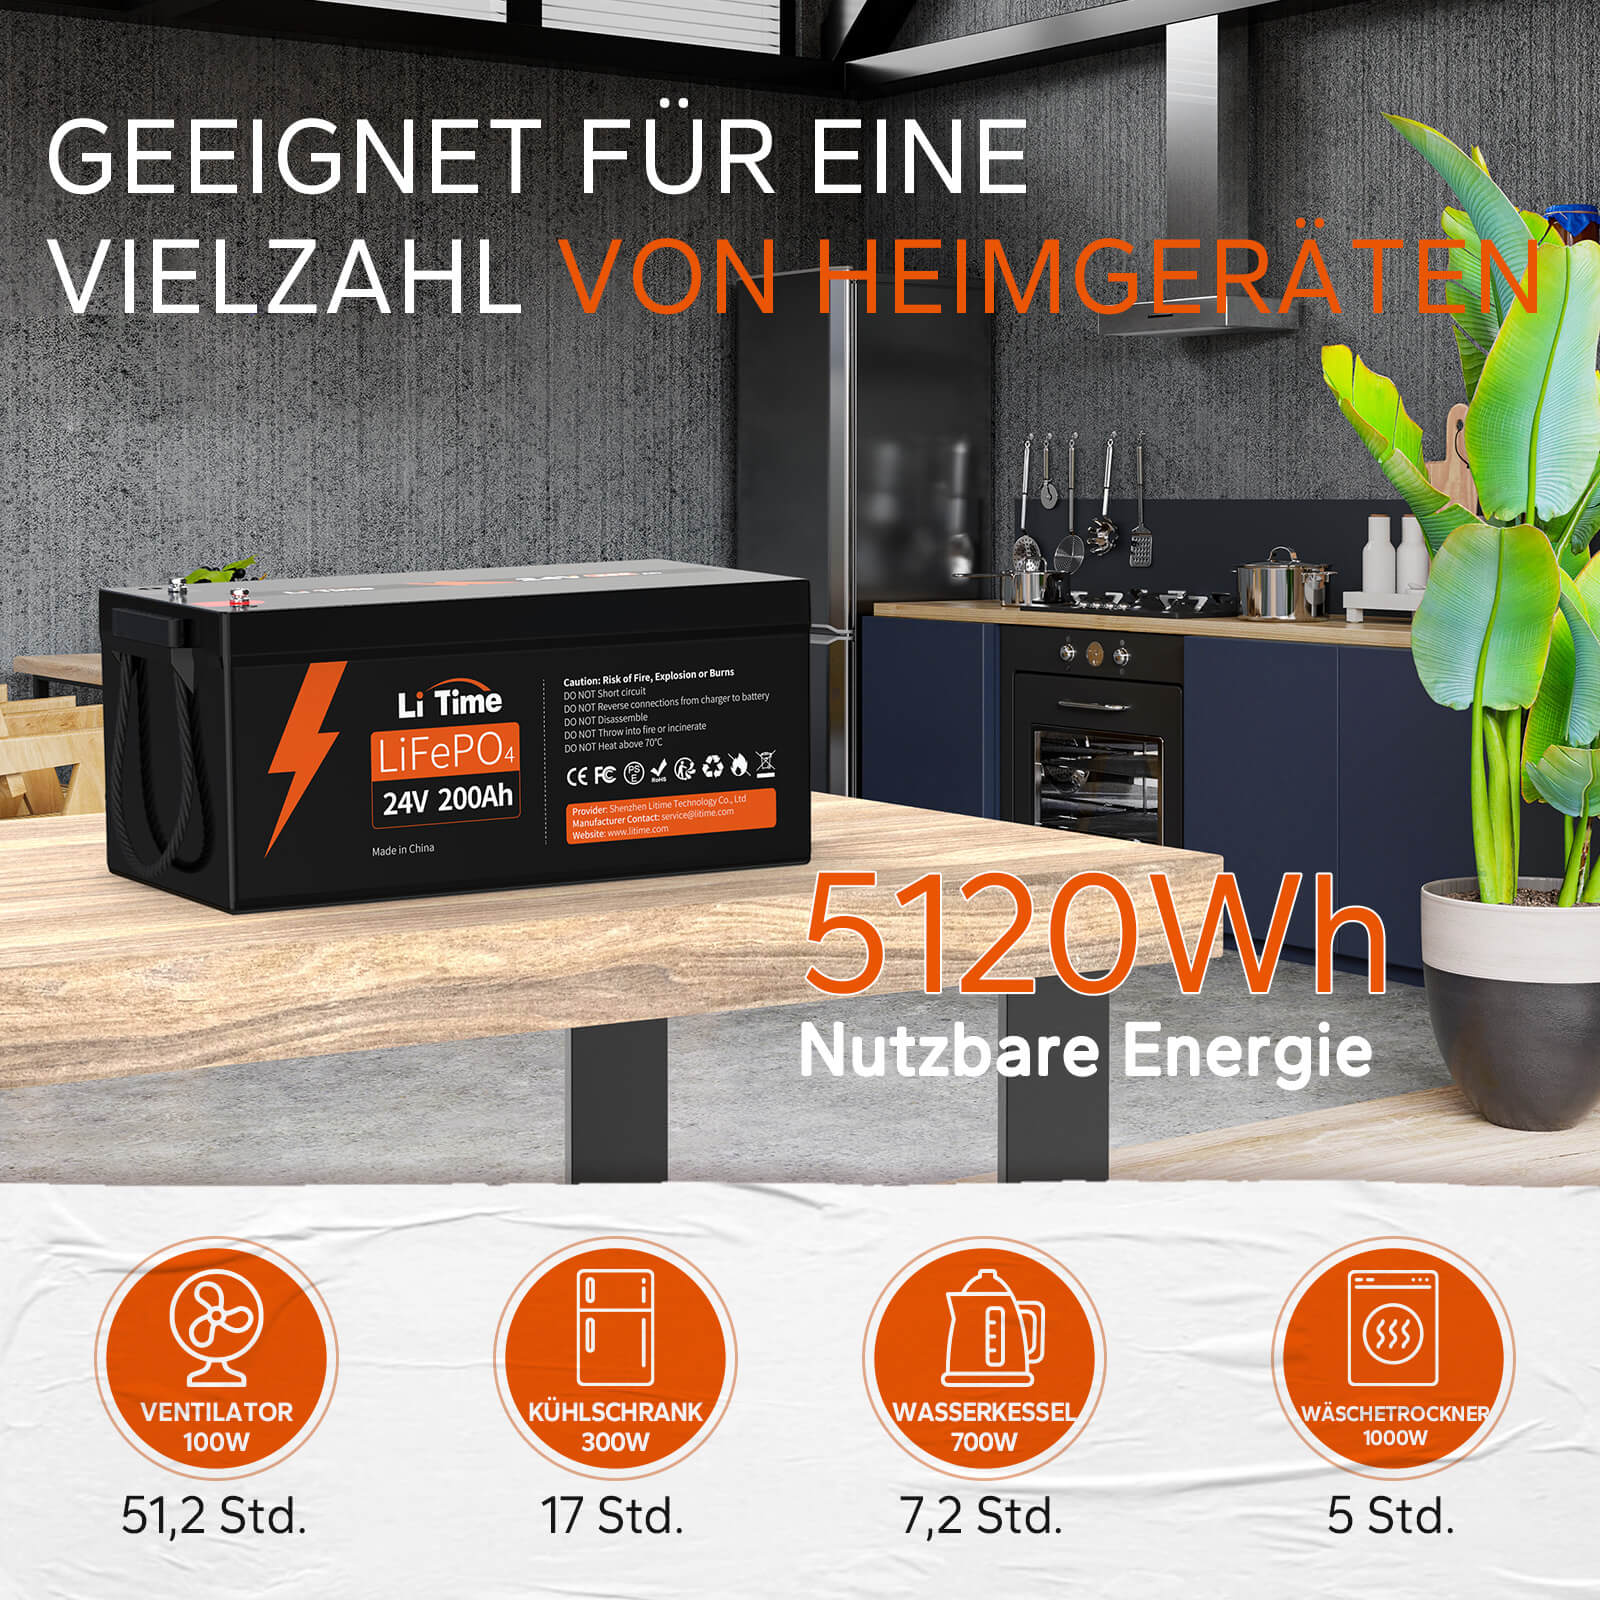 【0% IVA】Batteria LiTime 24V 200Ah Lithium LiFePO4 (SOLO per edifici residenziali e SOLO in DEU - Solo per clienti in Germania)